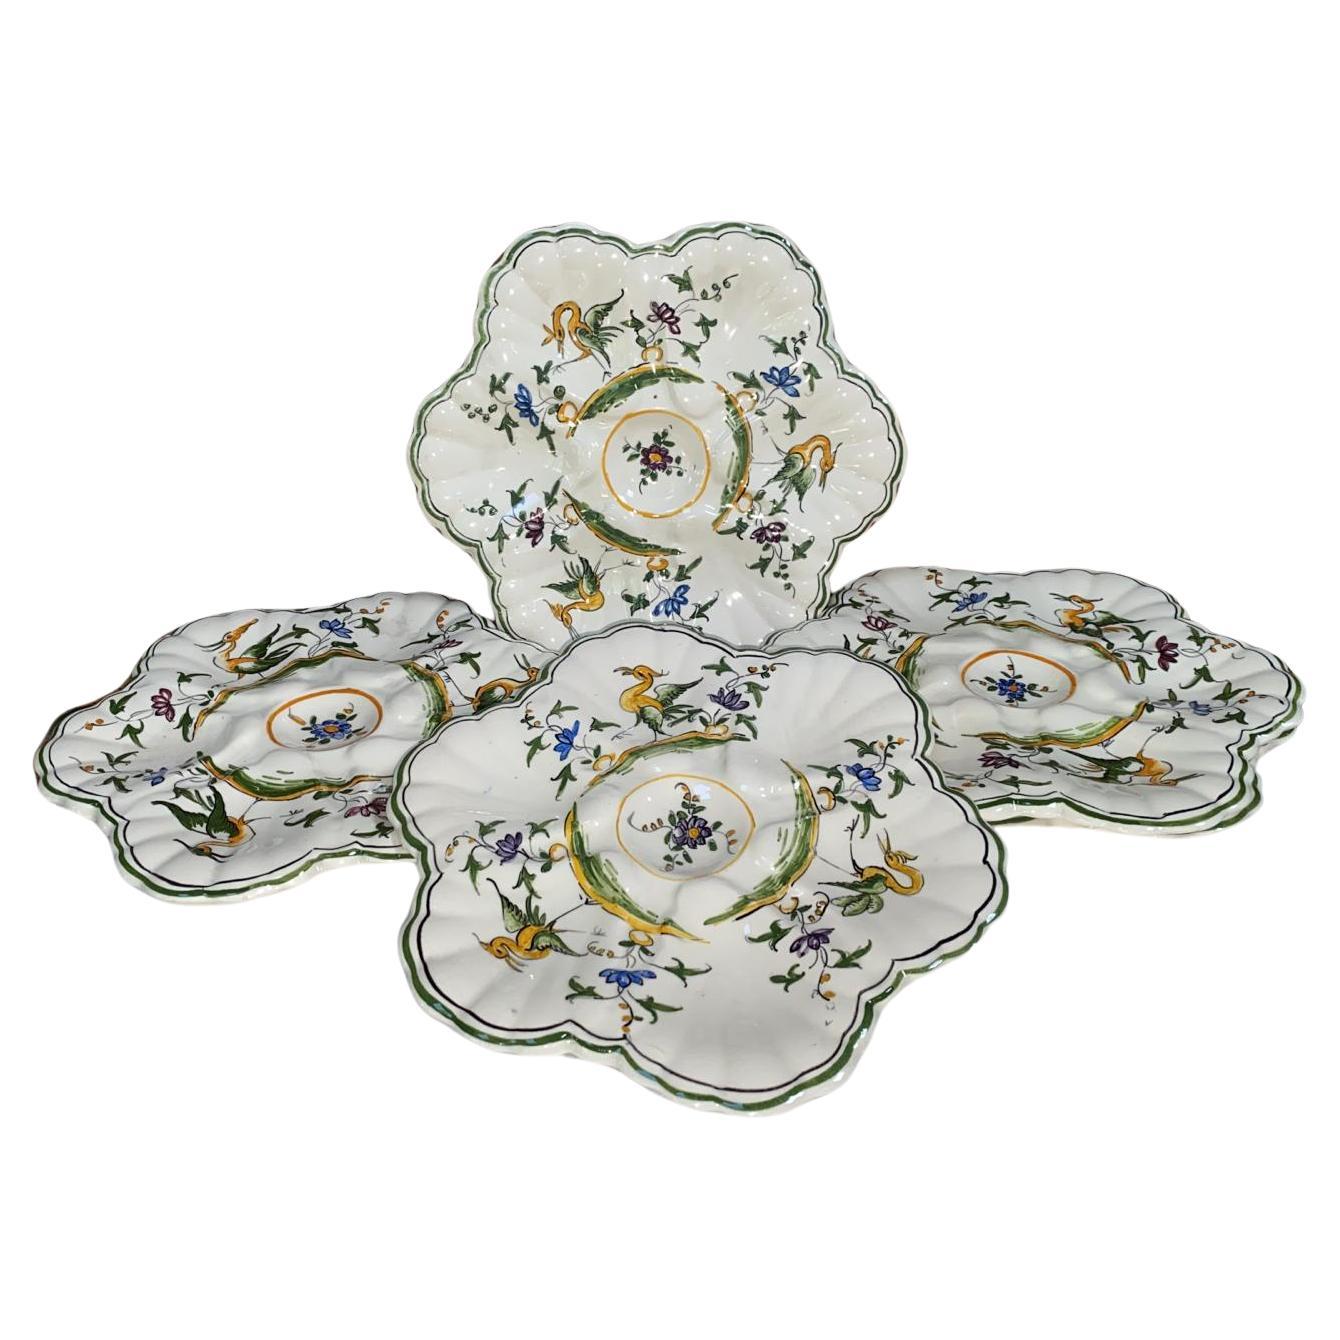 Satz von 12 französischen Fayence-Austerntellern und 1 Platte signiert Cabare um 1950.
Dekor aus Vögeln und Blumen
Platte 15,5 Zoll, 12 Teller 9,5 Zoll Durchmesser.